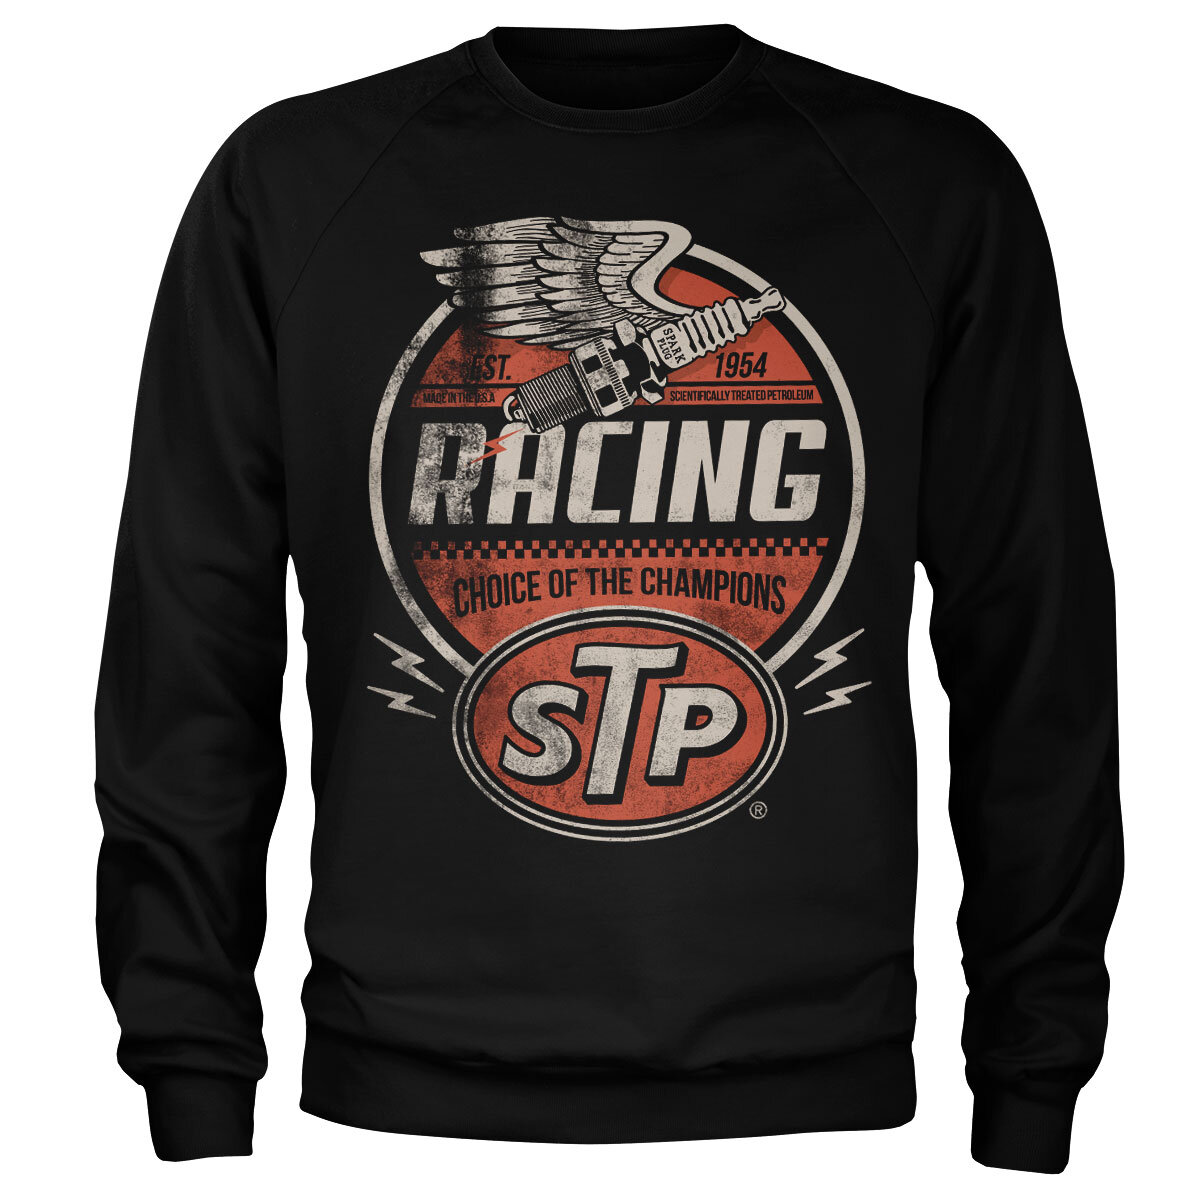 STP Vintage Racing Sweatshirt